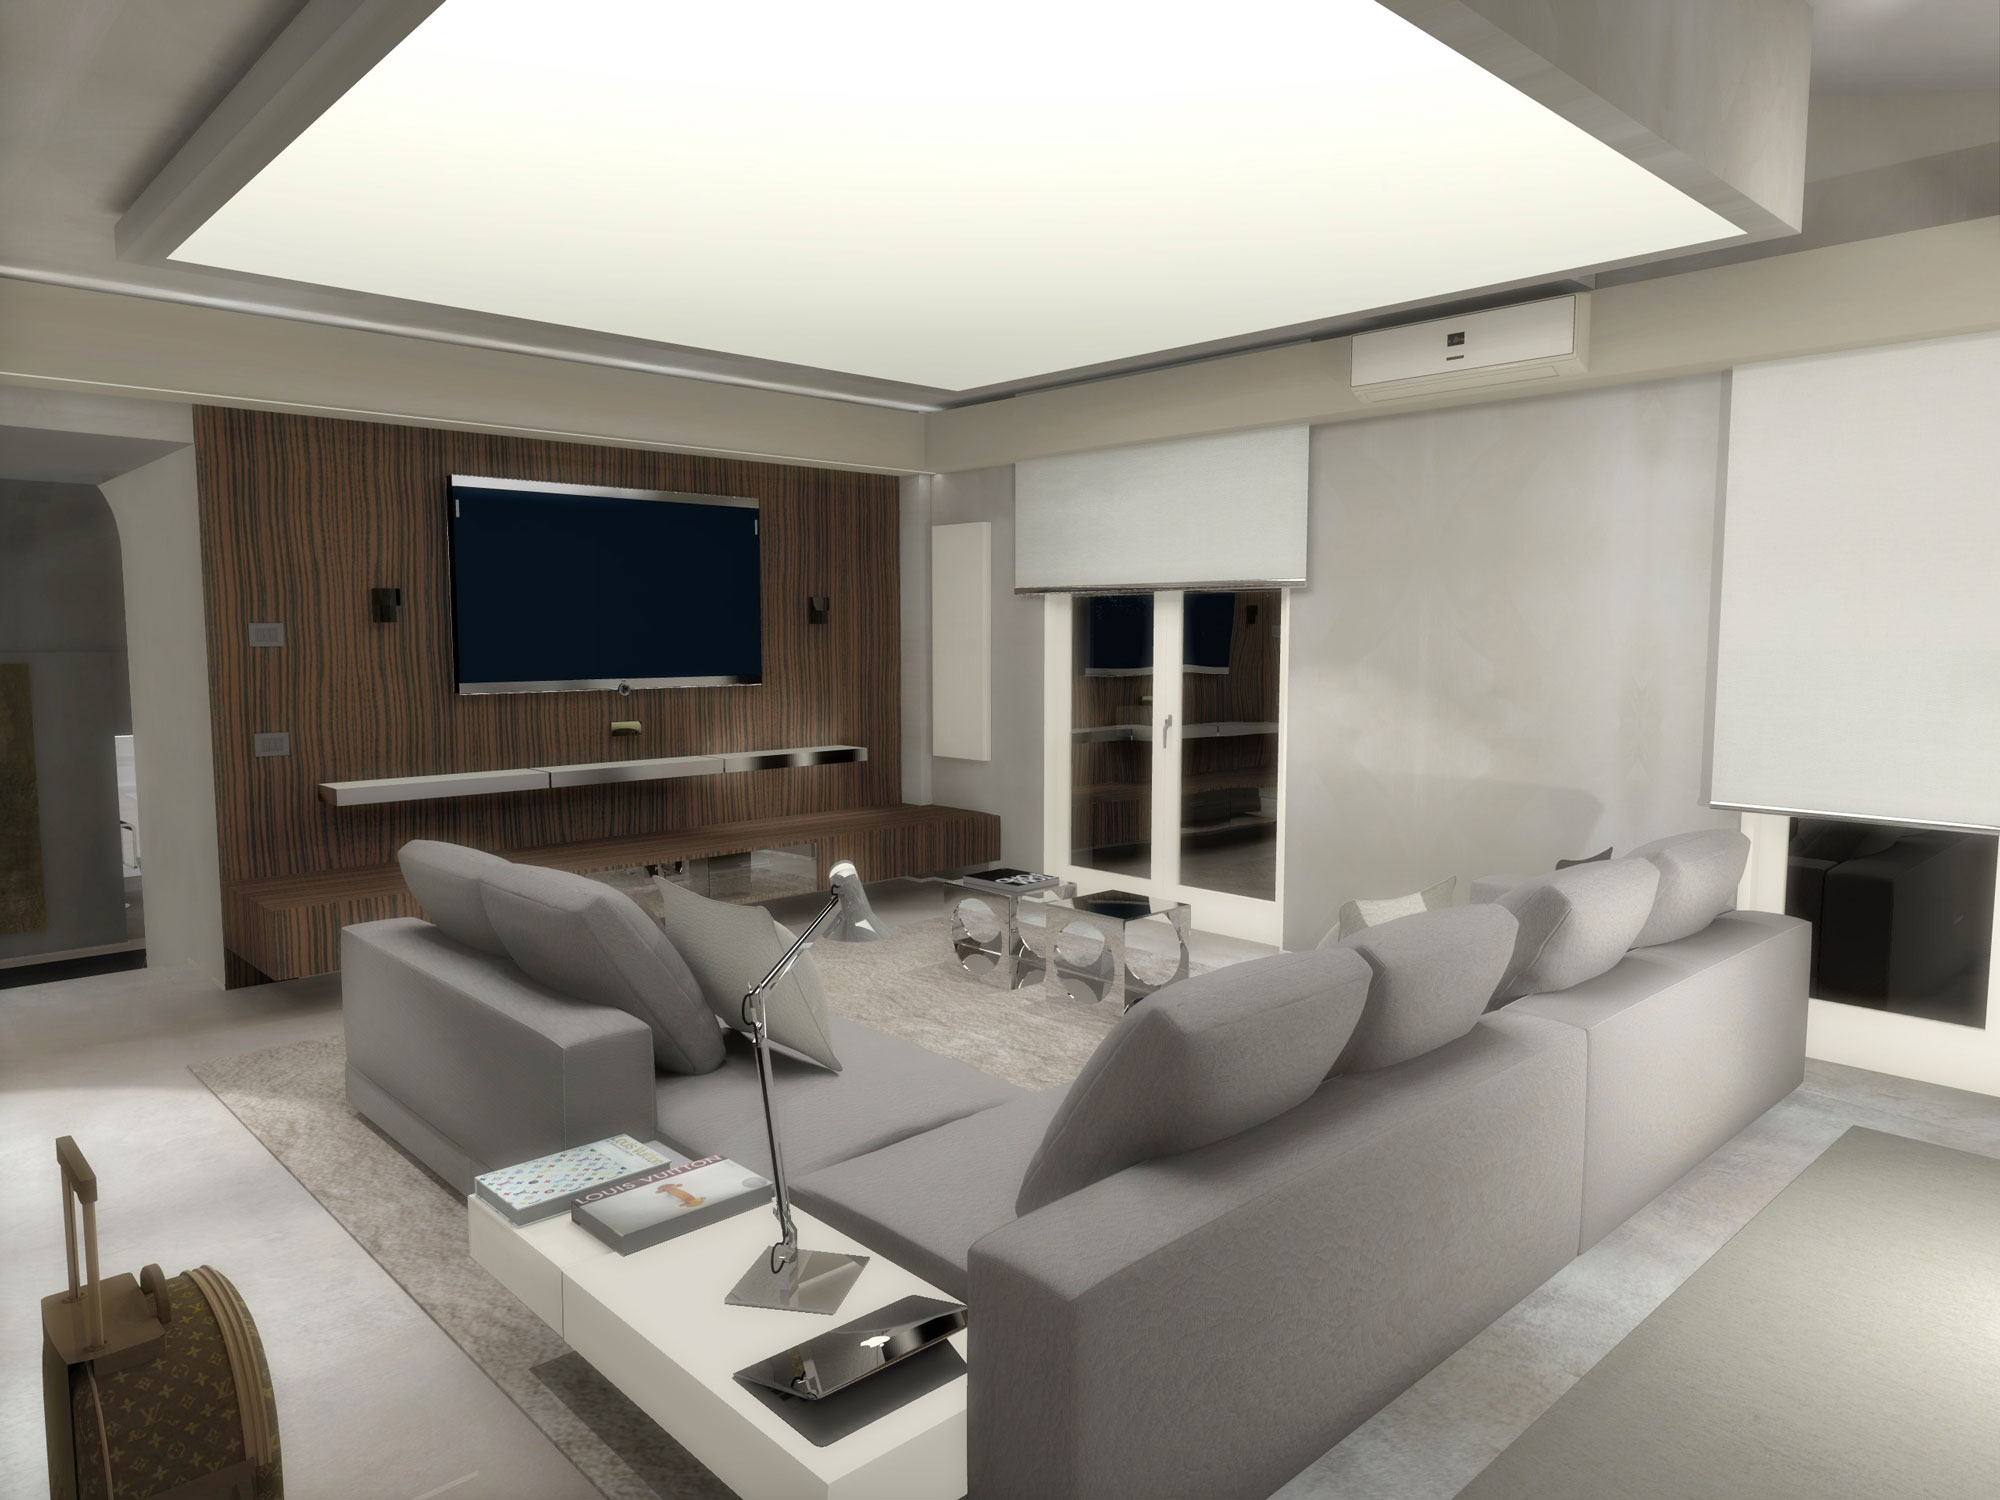 Private Residence in terni - Interior Design - Marco Bonfigli Architect